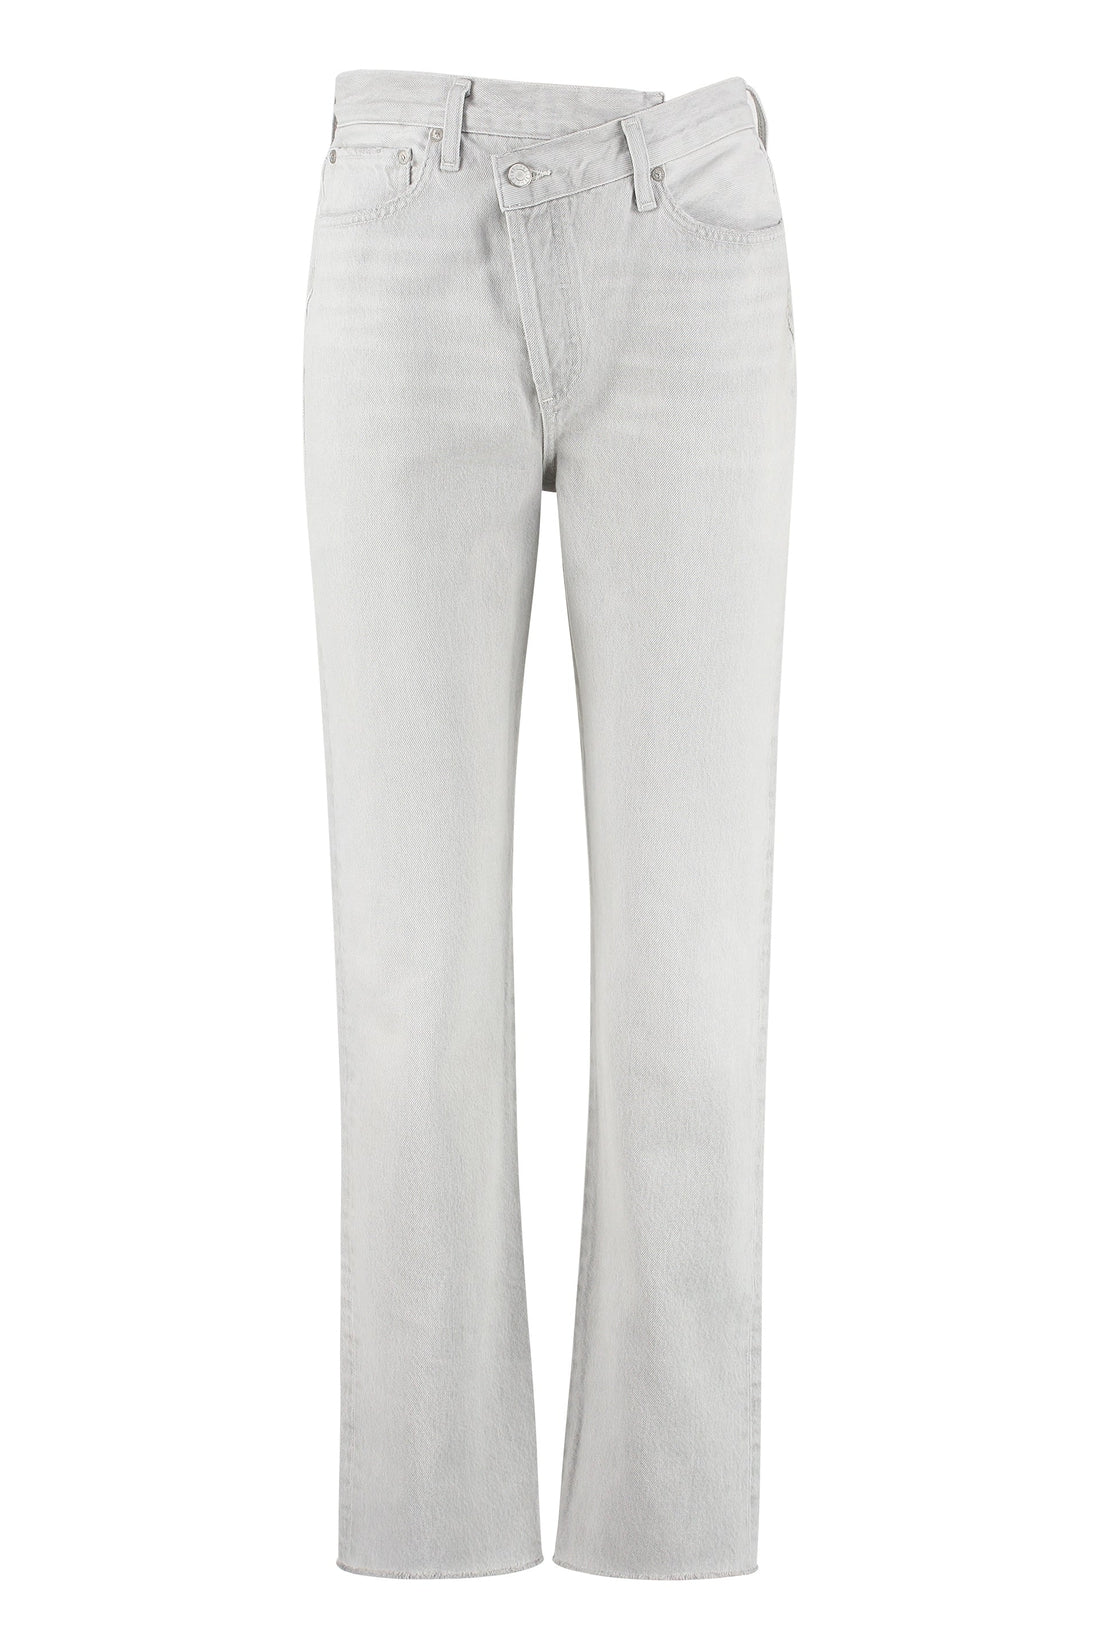 AGOLDE-OUTLET-SALE-Criss Cross straight leg jeans-ARCHIVIST